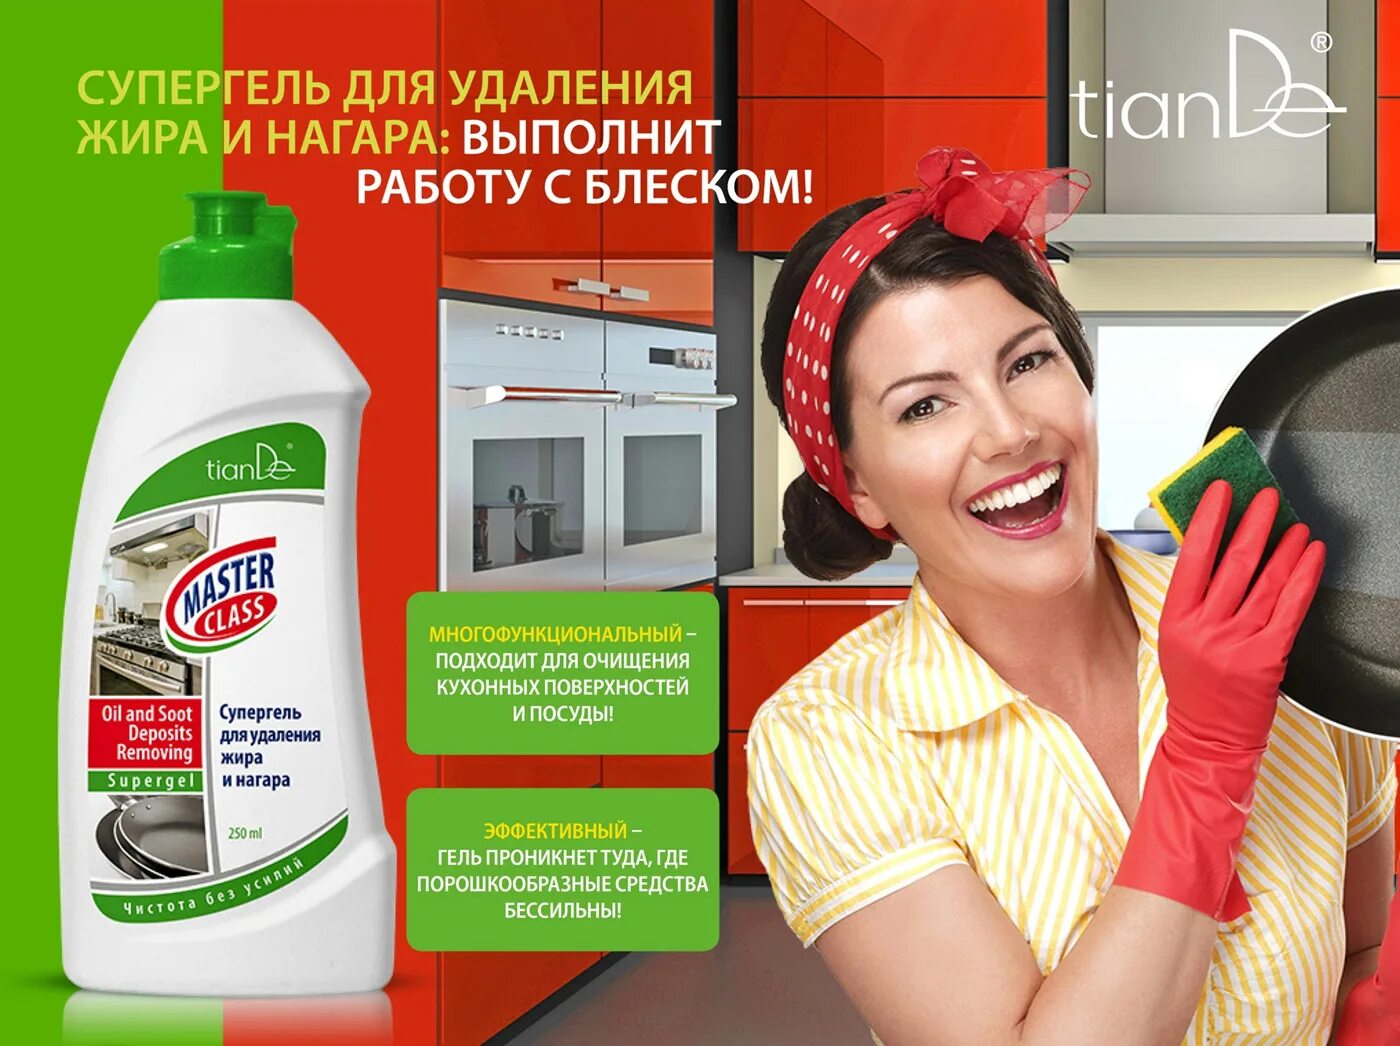 Эффективное средство от жира. Реклама чистящего средства. Реклама моющих средств. Средство для мытья реклама. Удалитель жира и нагара.